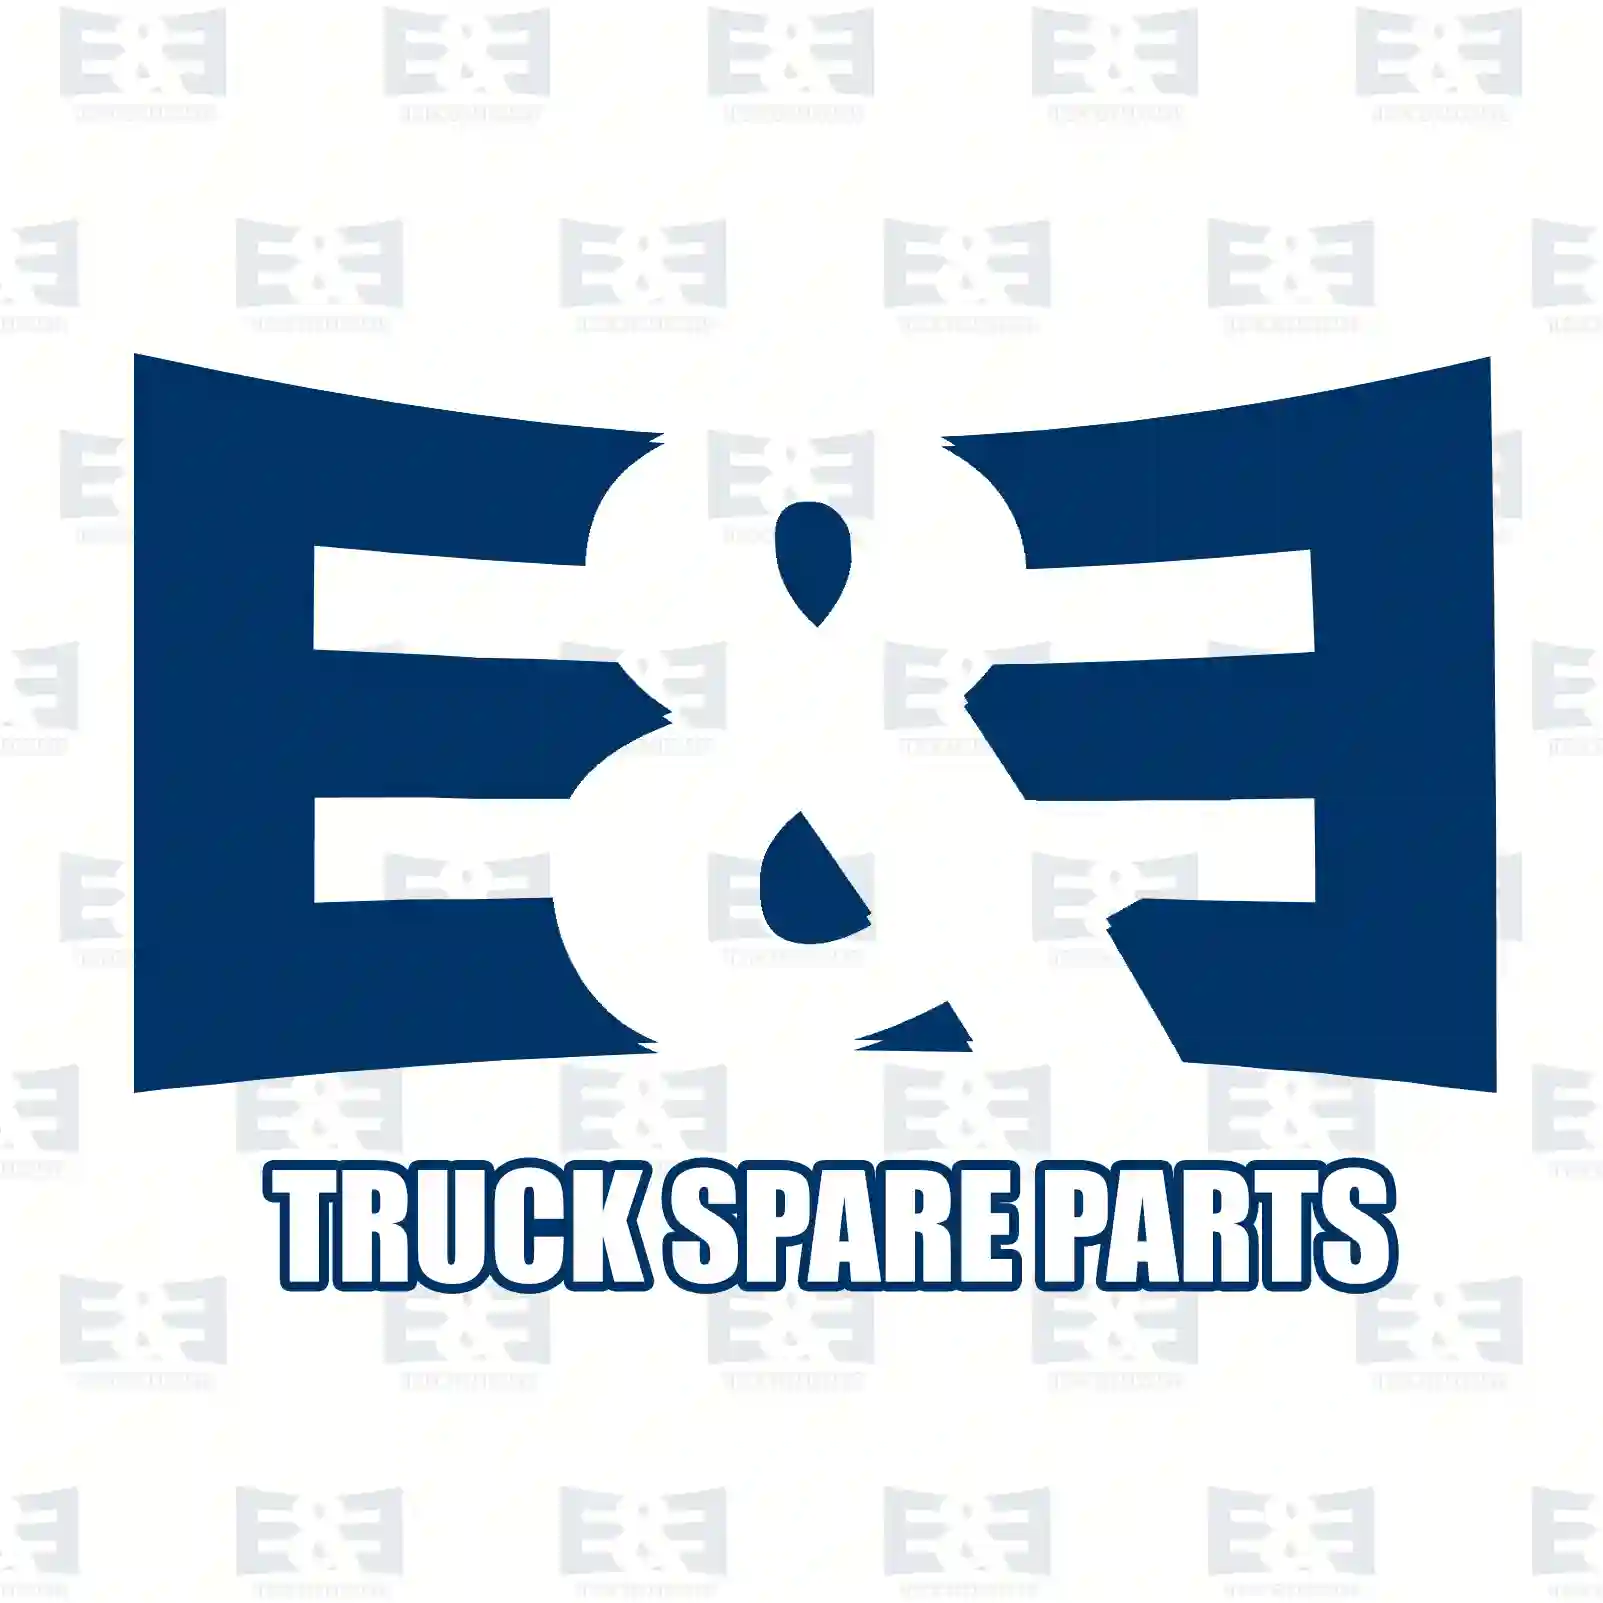 Oil seal, 2E2277526, 1324874, 1489047, 1533422 ||  2E2277526 E&E Truck Spare Parts | Truck Spare Parts, Auotomotive Spare Parts Oil seal, 2E2277526, 1324874, 1489047, 1533422 ||  2E2277526 E&E Truck Spare Parts | Truck Spare Parts, Auotomotive Spare Parts